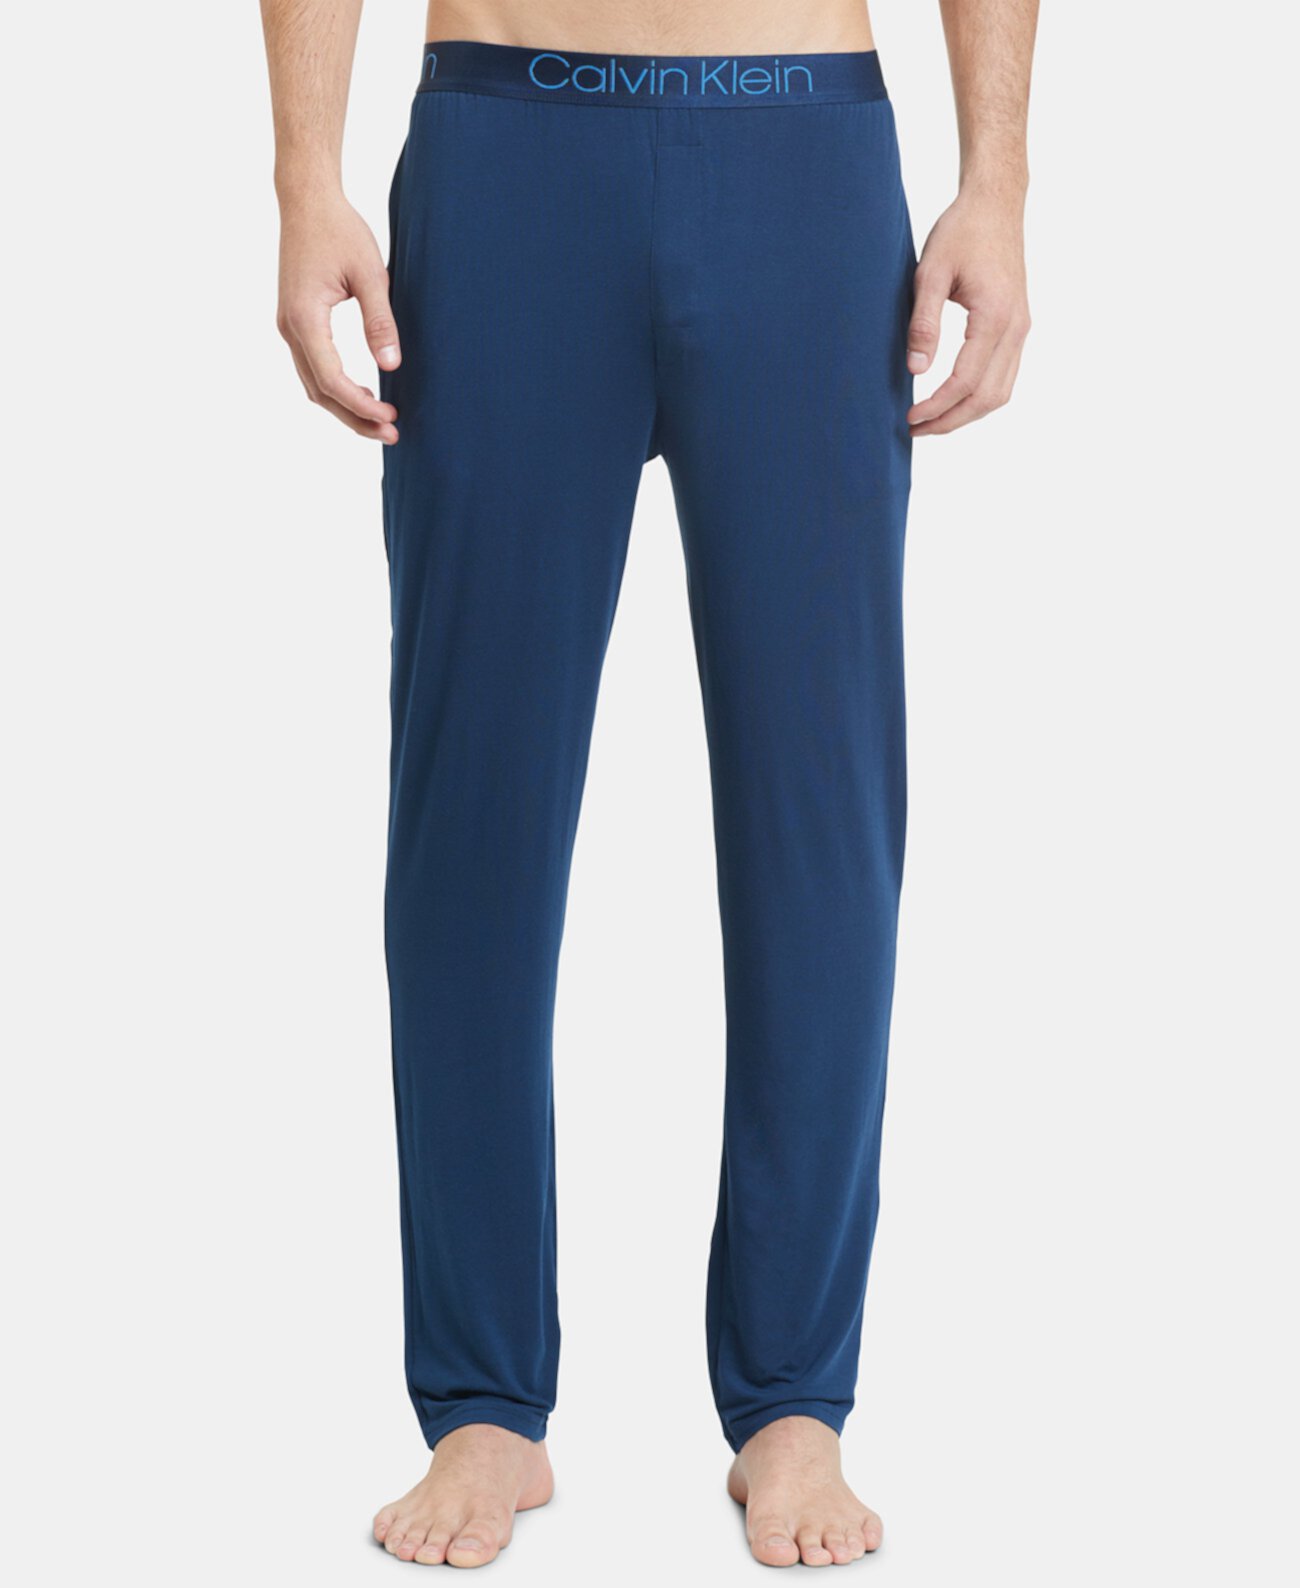 Мужские ультрамягкие пижамные брюки из модала Calvin Klein